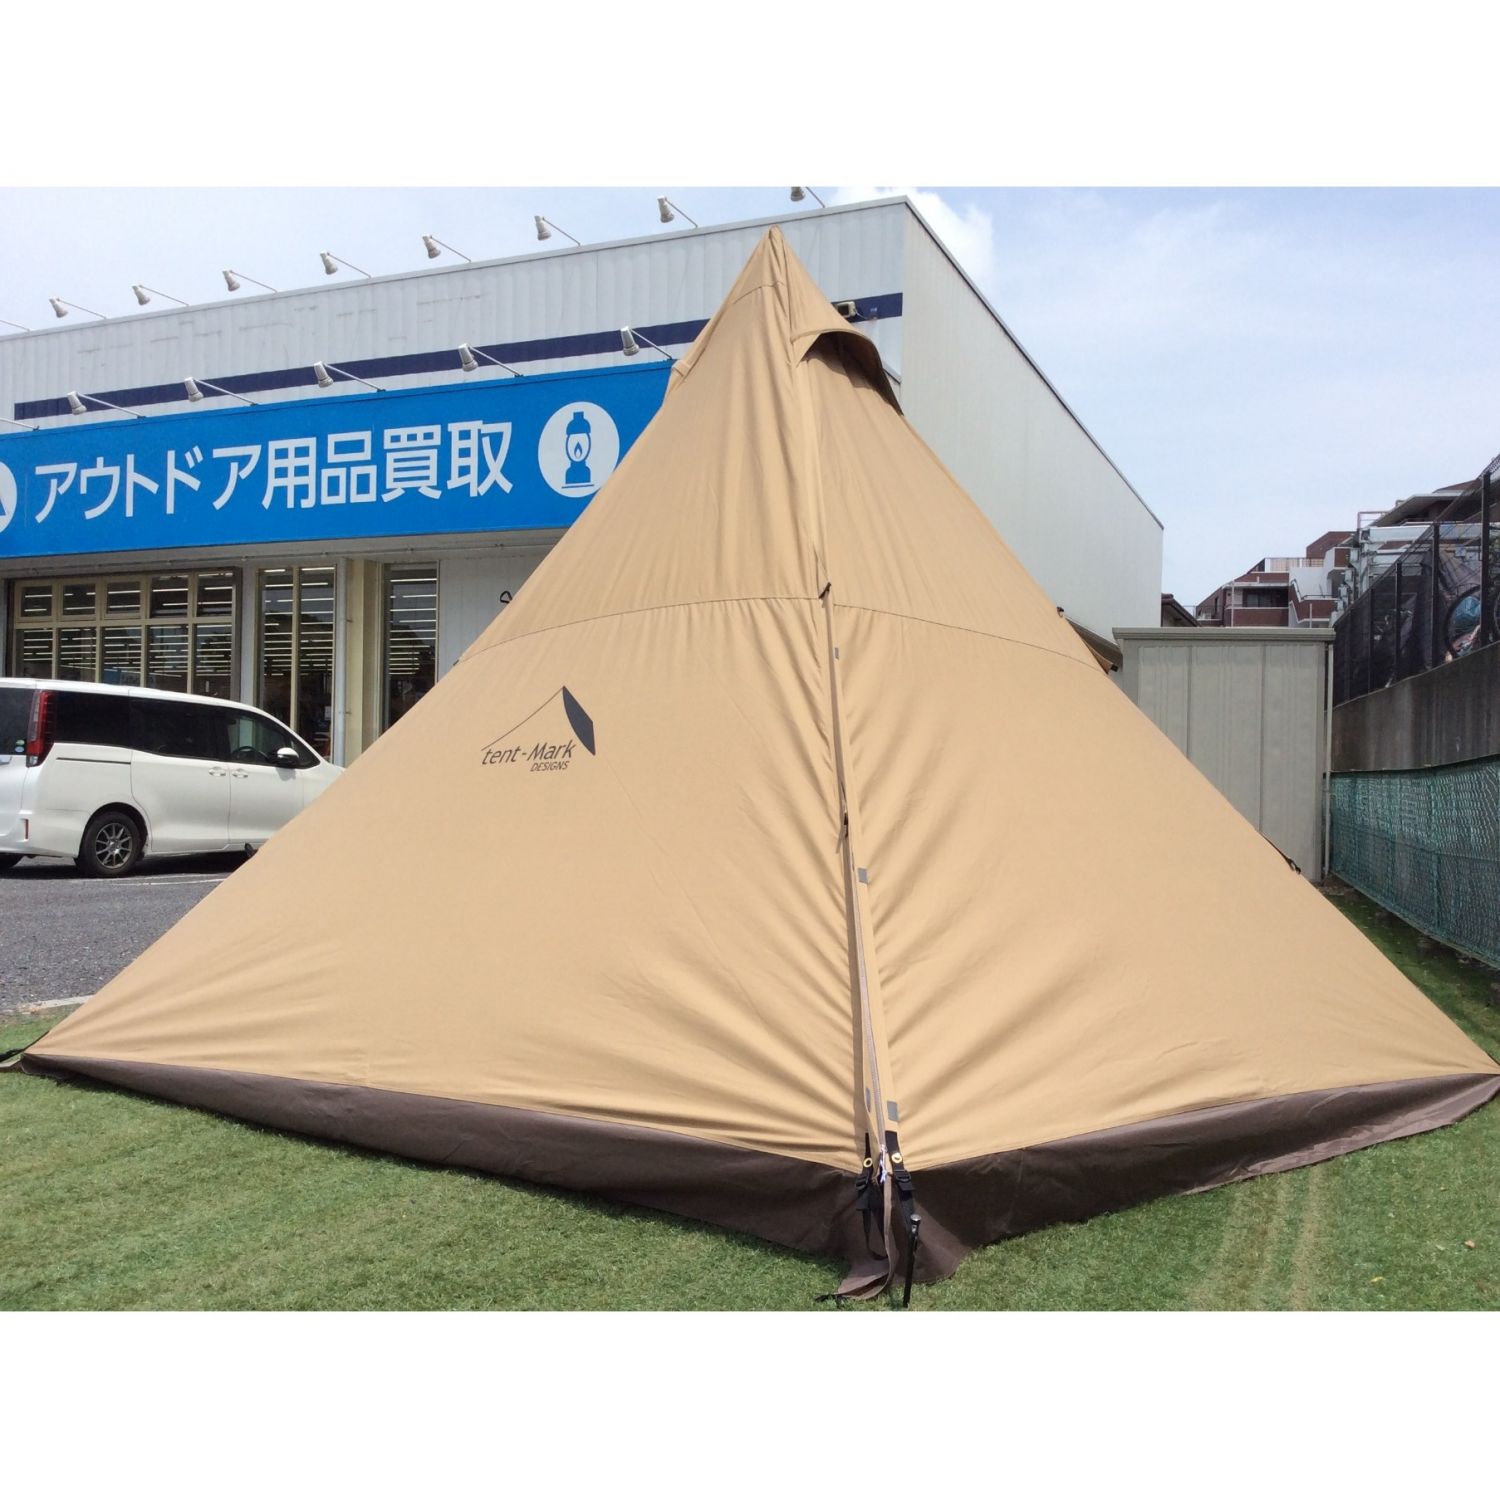 tent-Mark DESIGNS サーカスTC サンドカラー